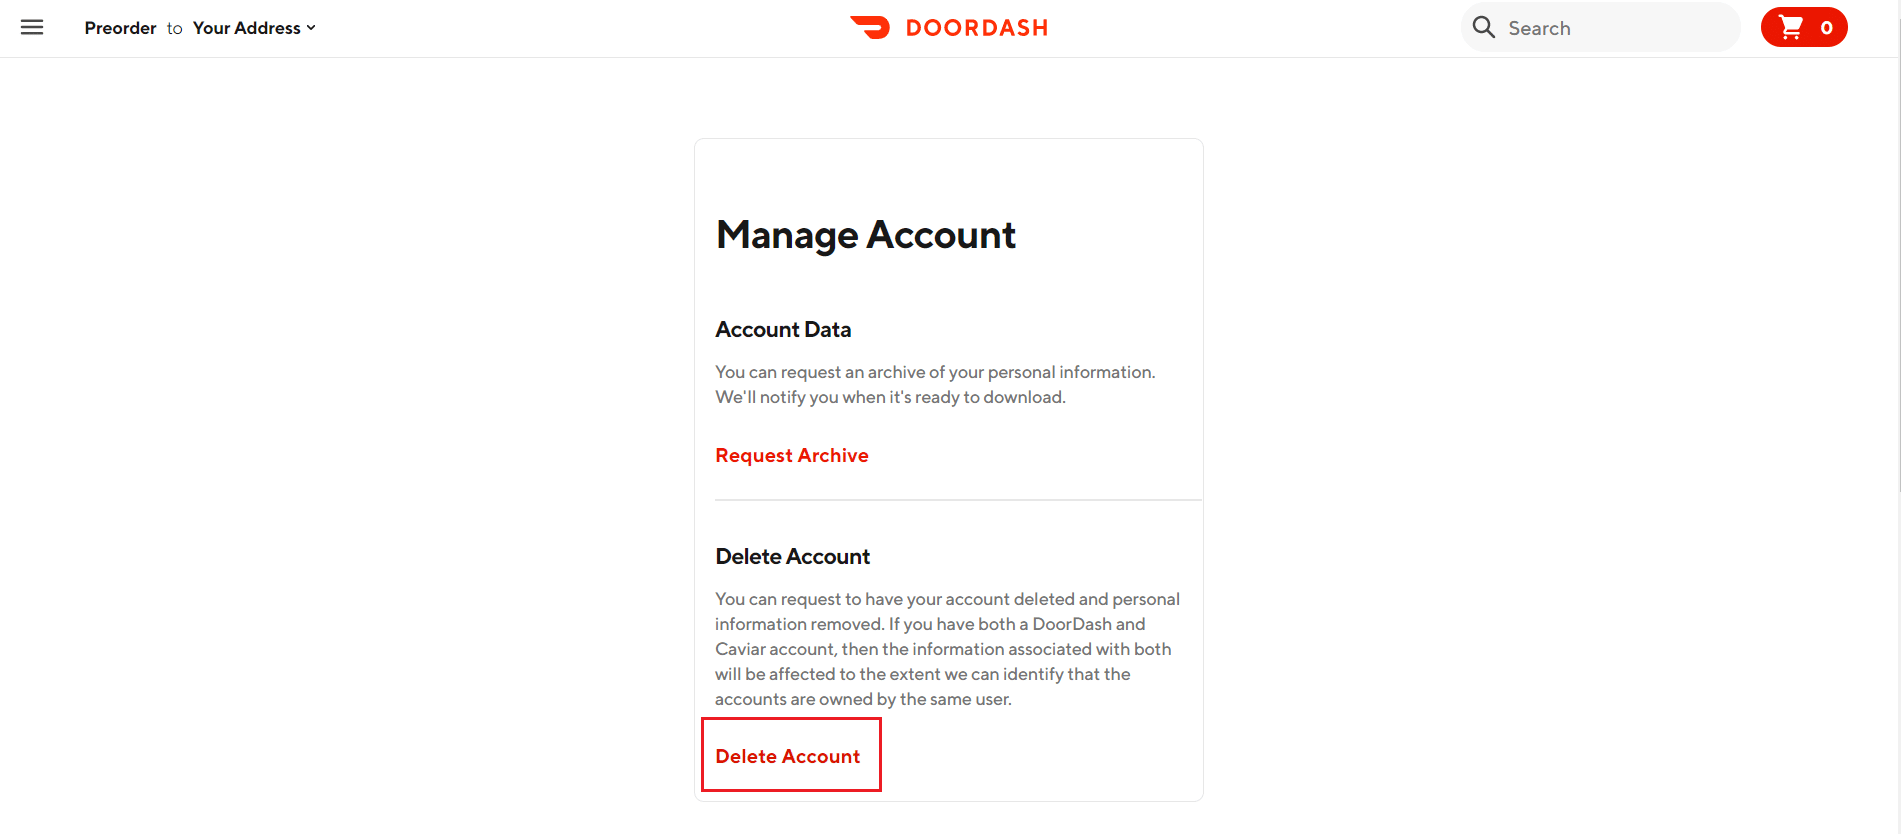 Supprimer le compte dans la page de gestion du compte DoorDash